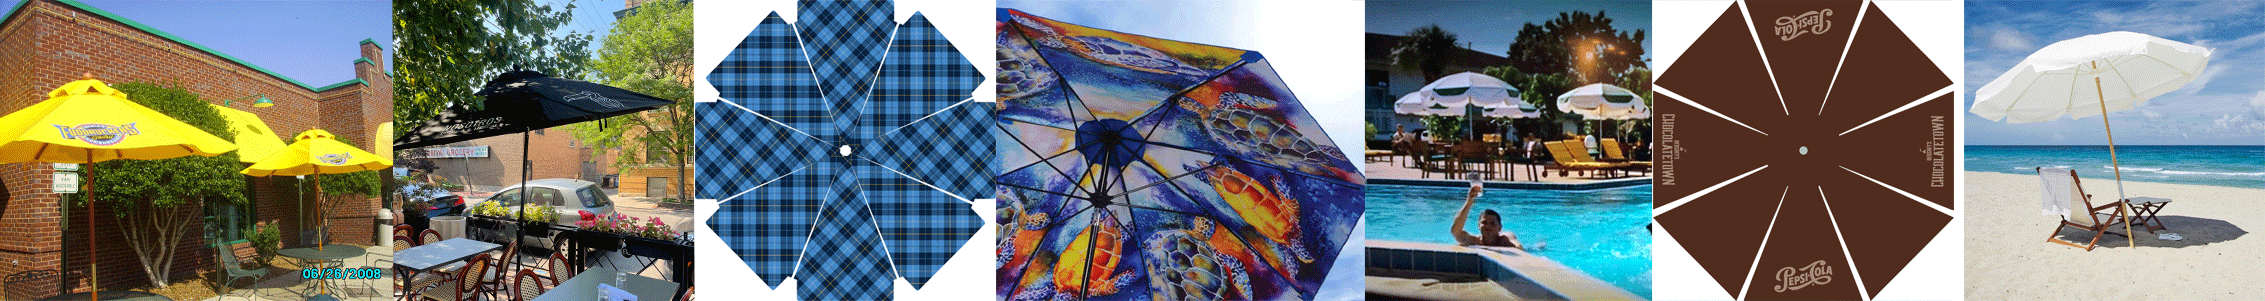 Commercial-Patio-Umbrellas